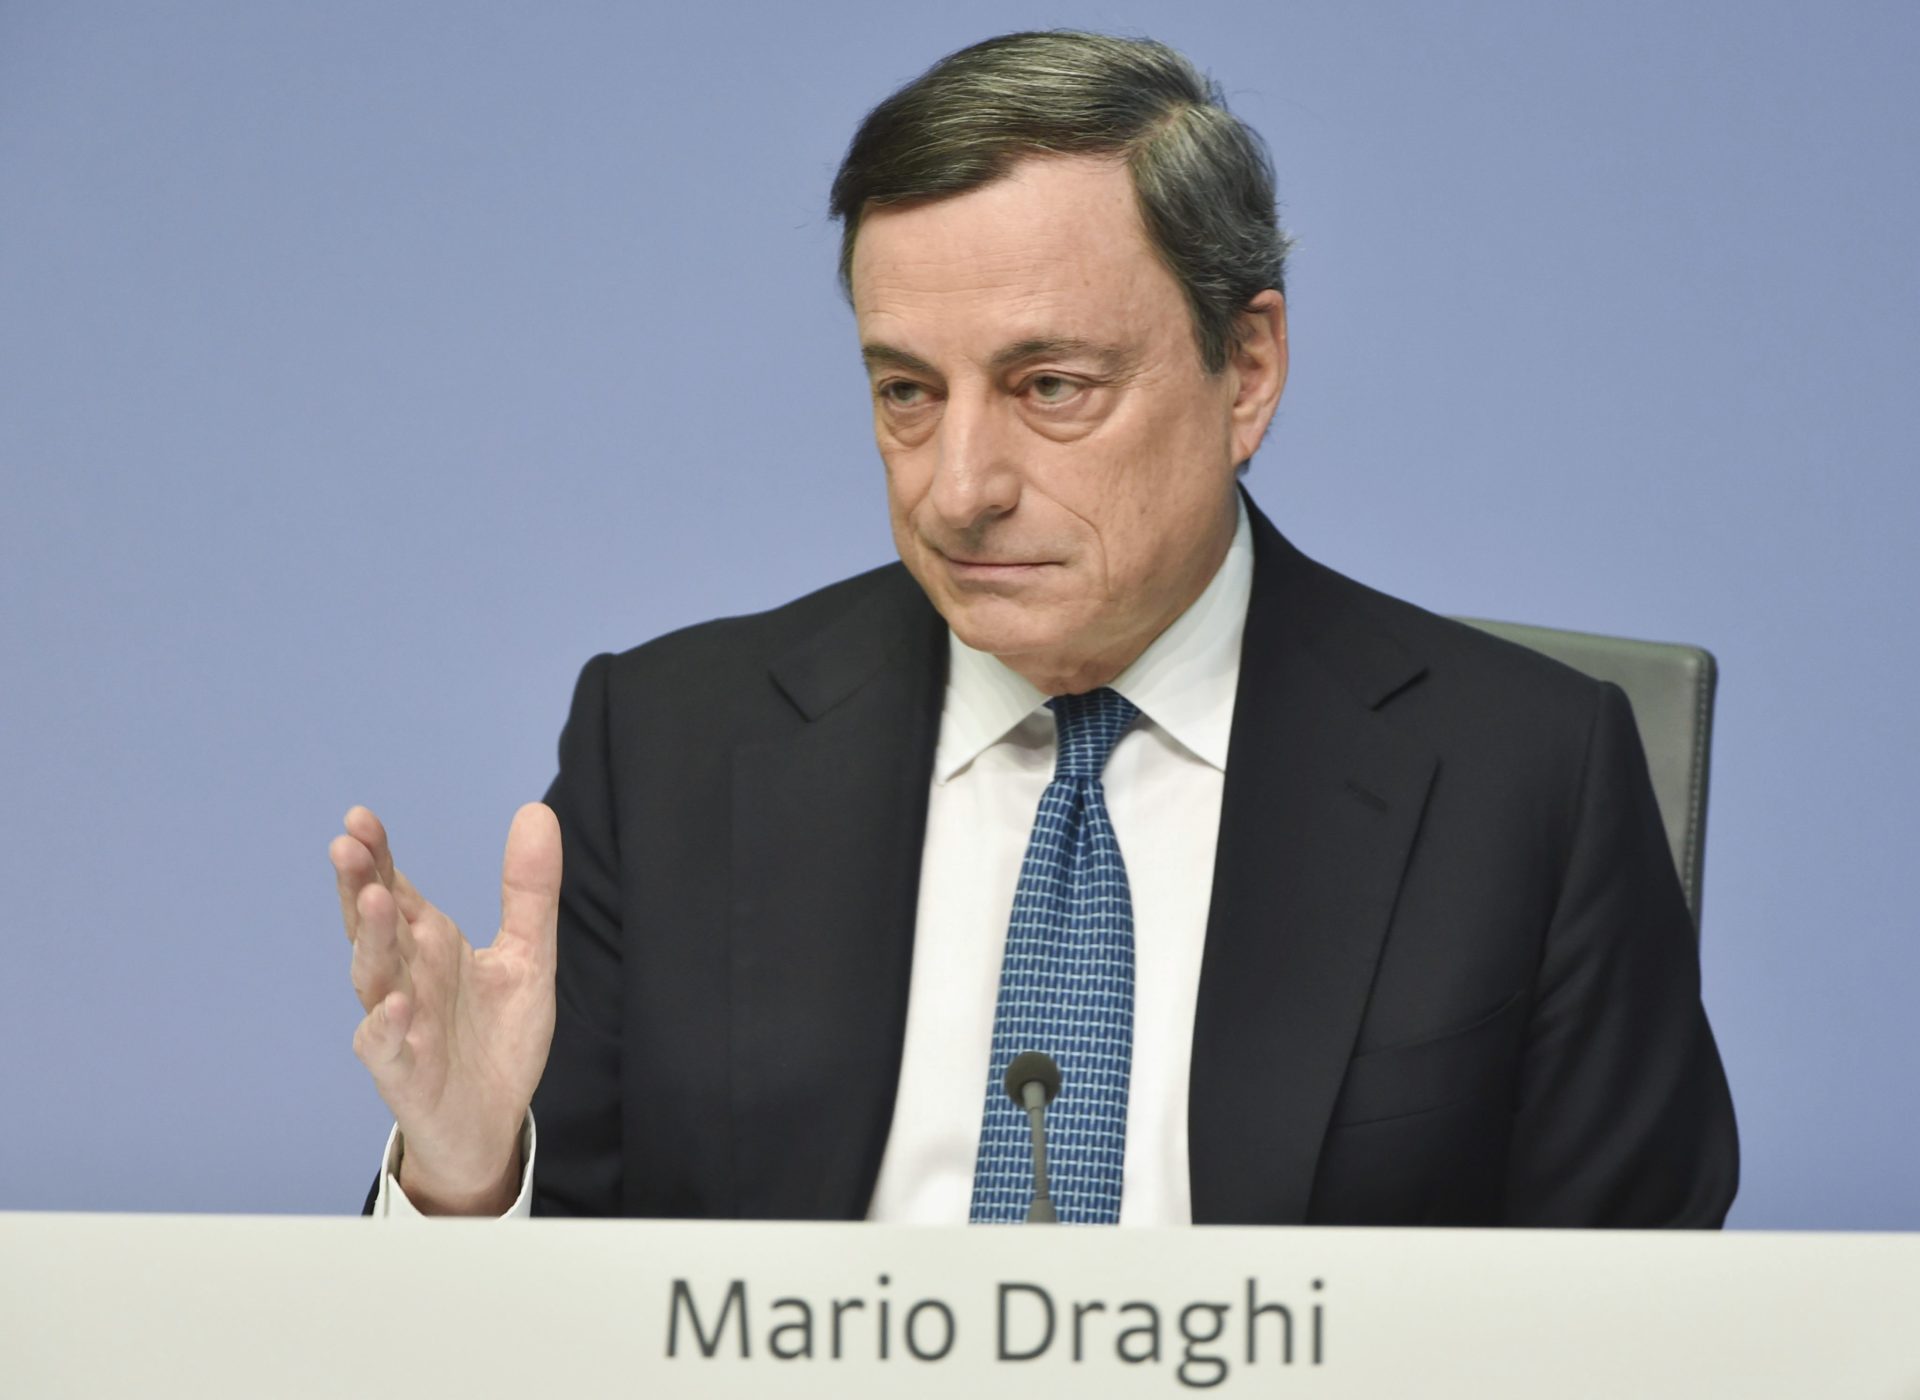 Mario Draghi. ECB. European Central Bank